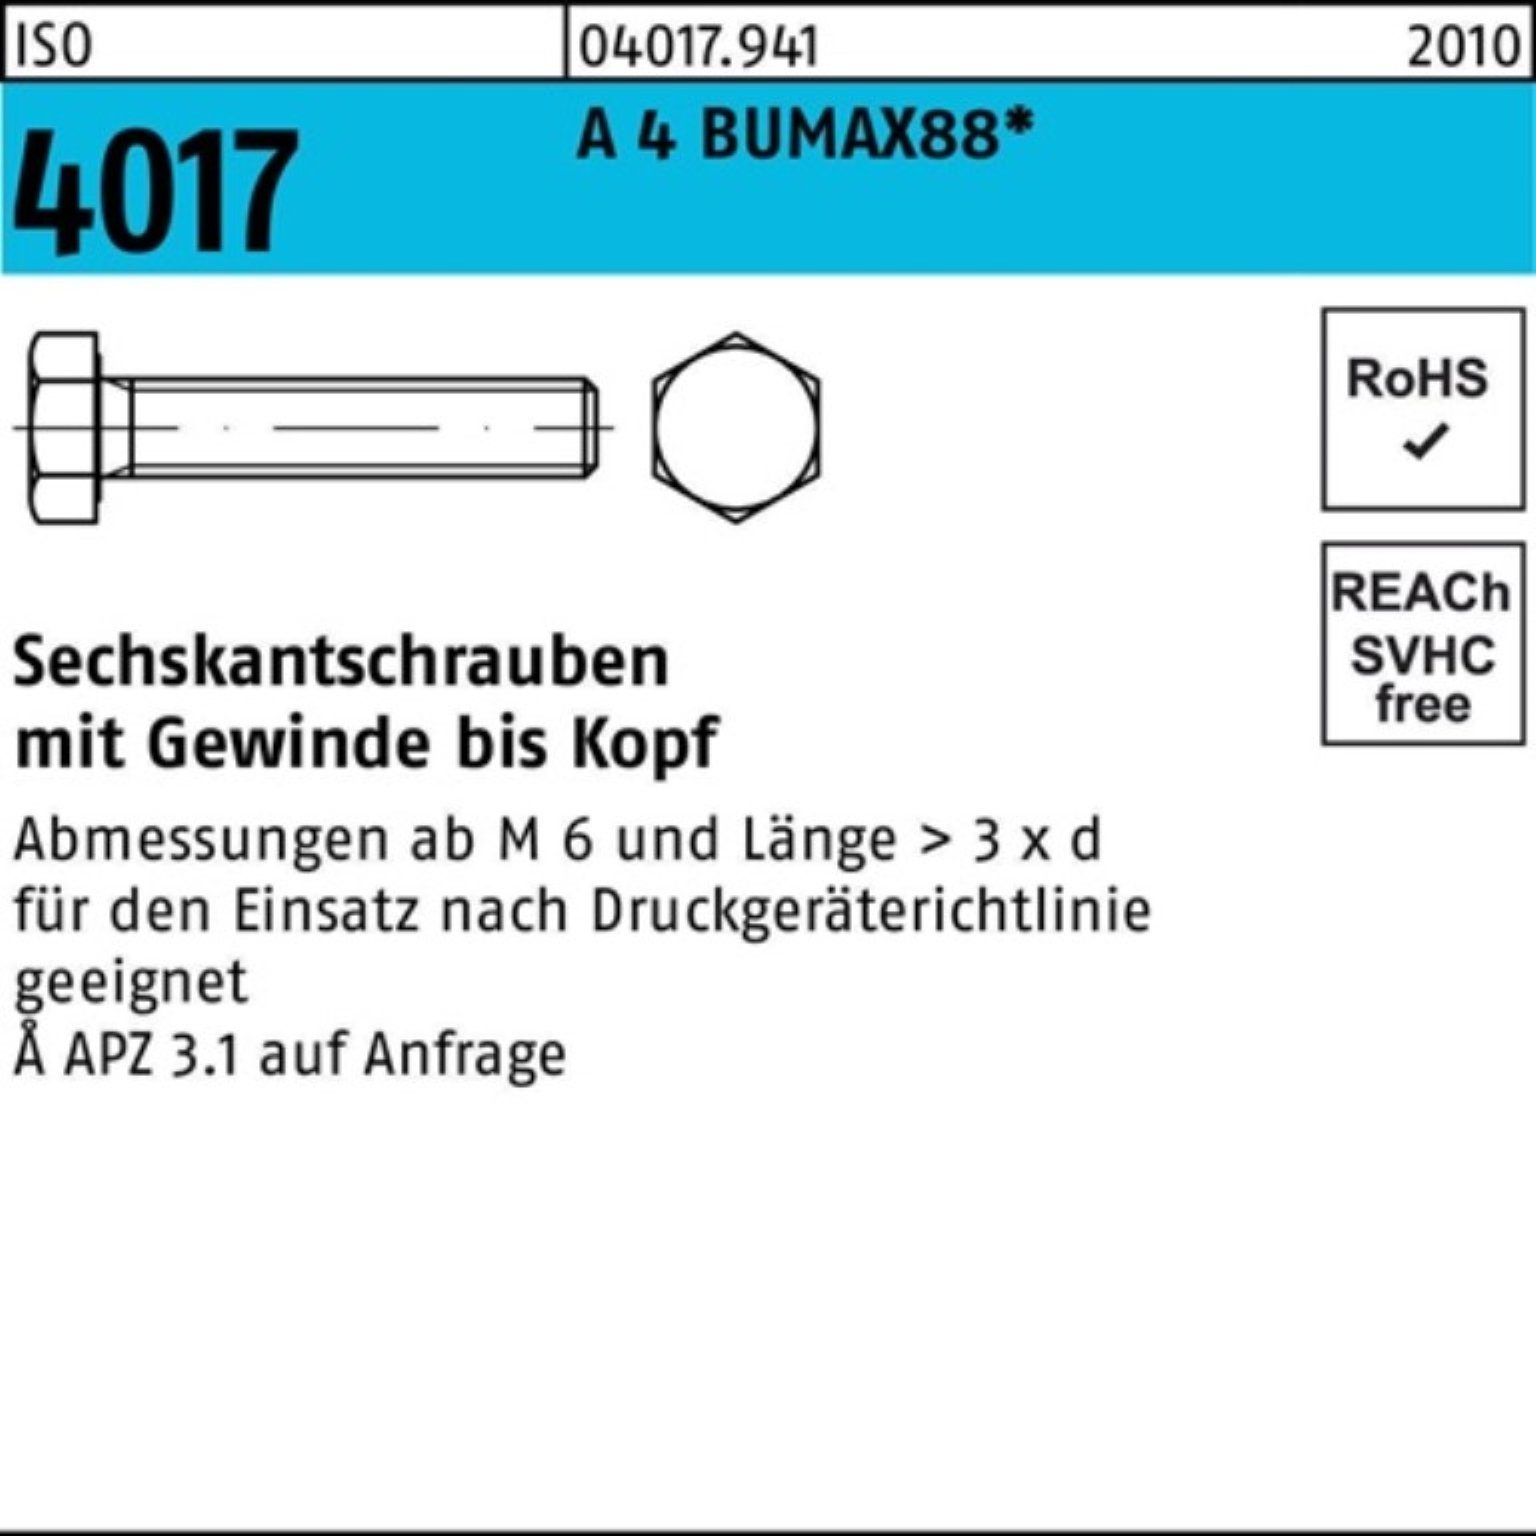 Bufab Sechskantschraube 100er Pack Sechskantschraube ISO 4017 VG M20x 50 A 4 BUMAX88 10 Stück